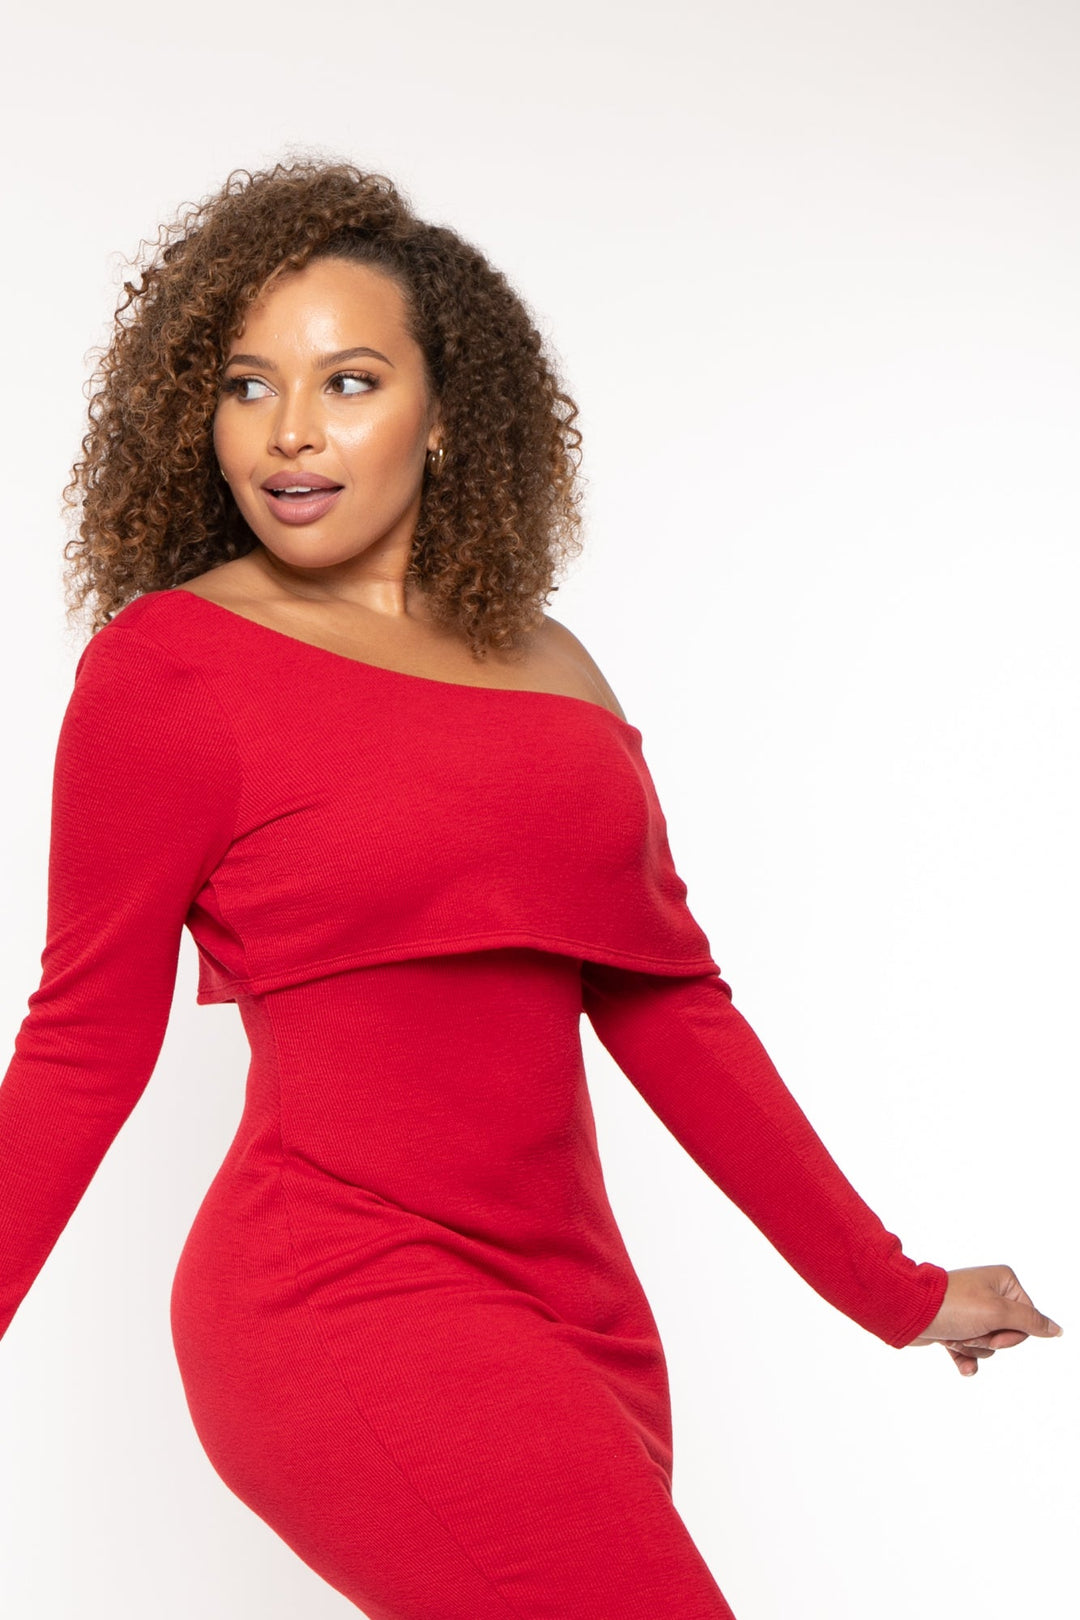 Off-Shoulder Red Dress! Shop Now - LASTINCH #MadeForCurves #plussizefashion  #plussizeclothing #psblogger #curves #curvy…